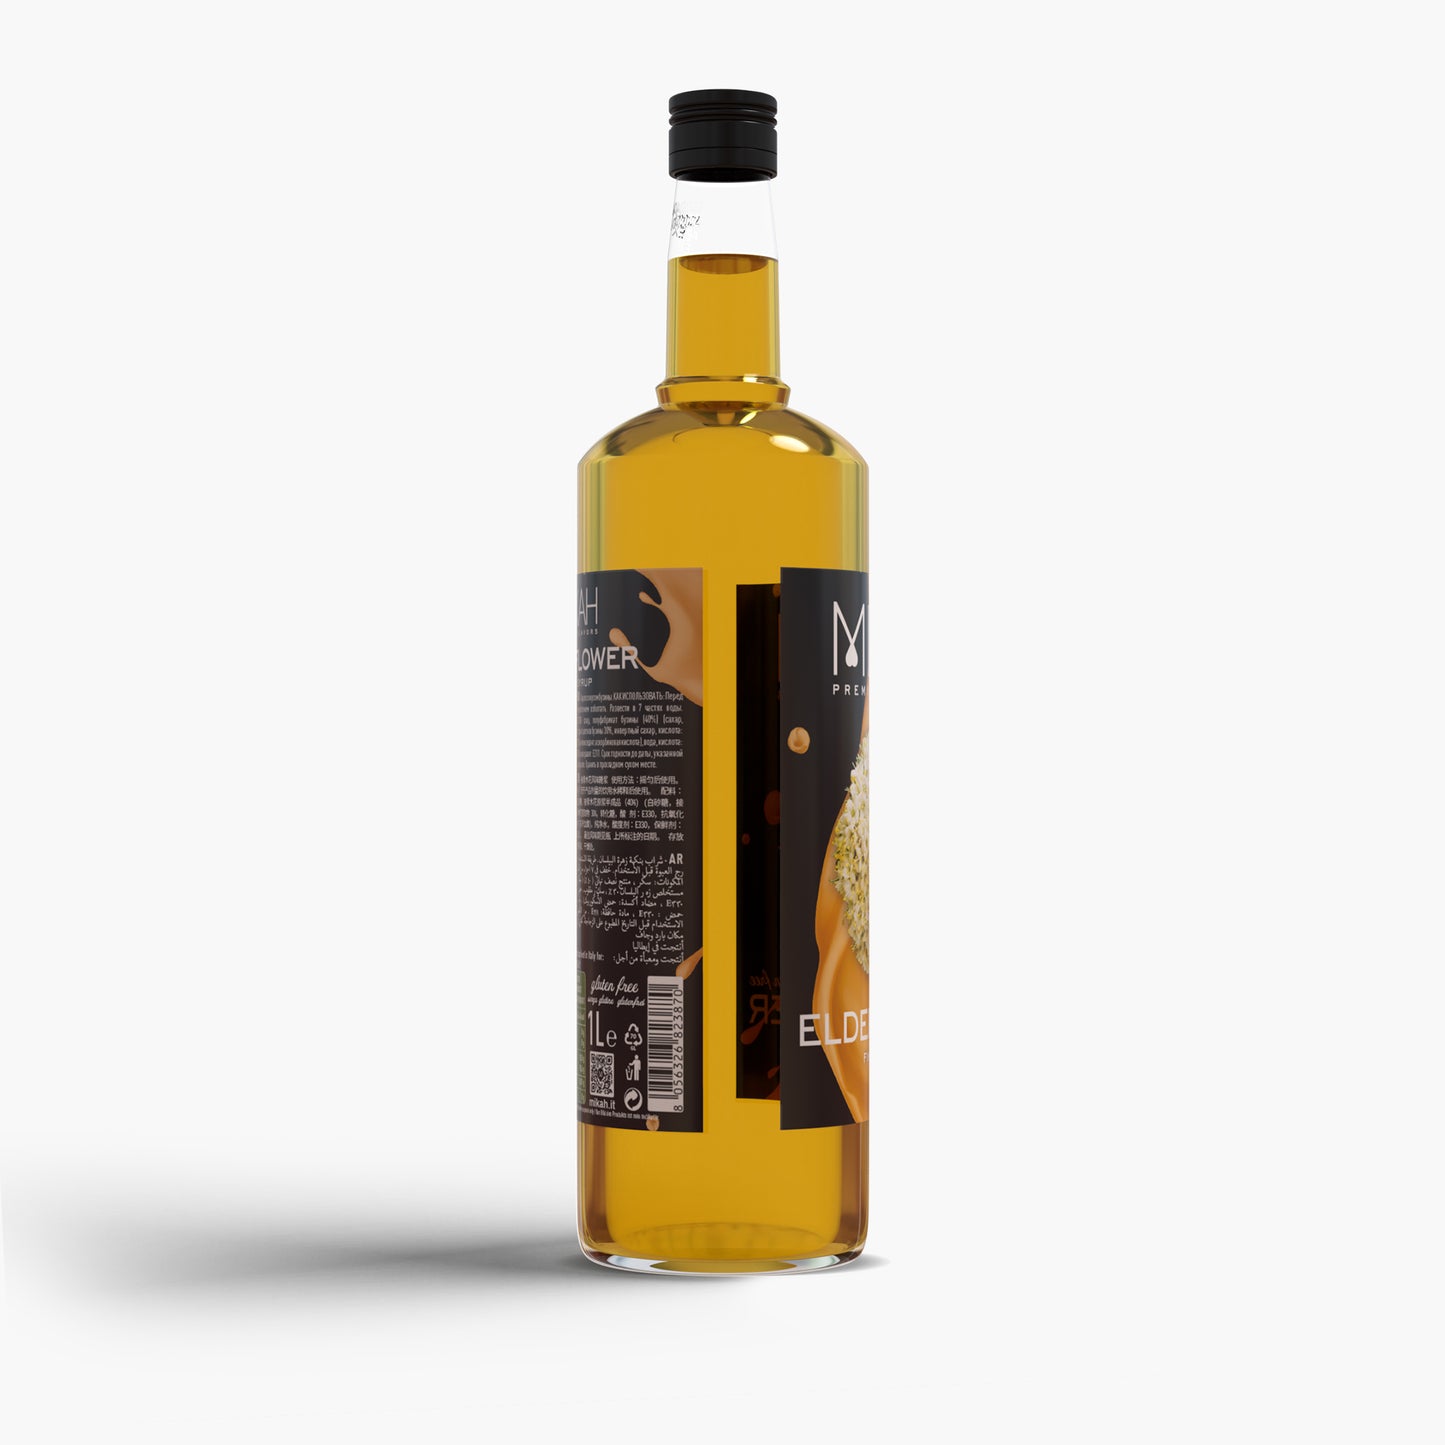 
                  
                    Syrup Mikah Premium Flavors - Elderflower 1L
                  
                